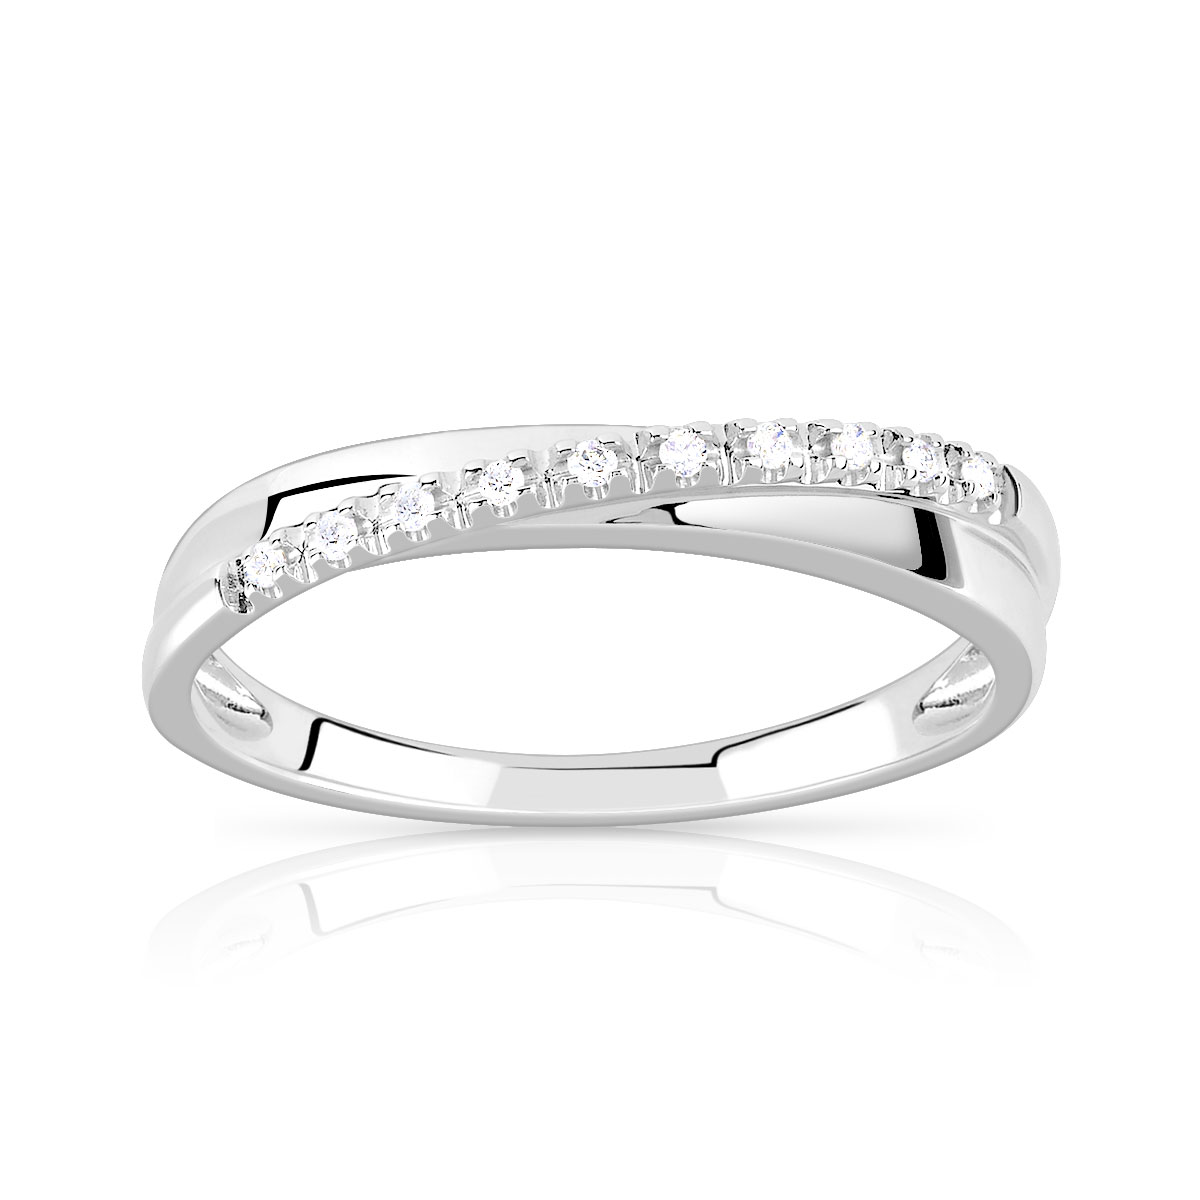 Bague or 750 blanc anneaux entrelacés diamants